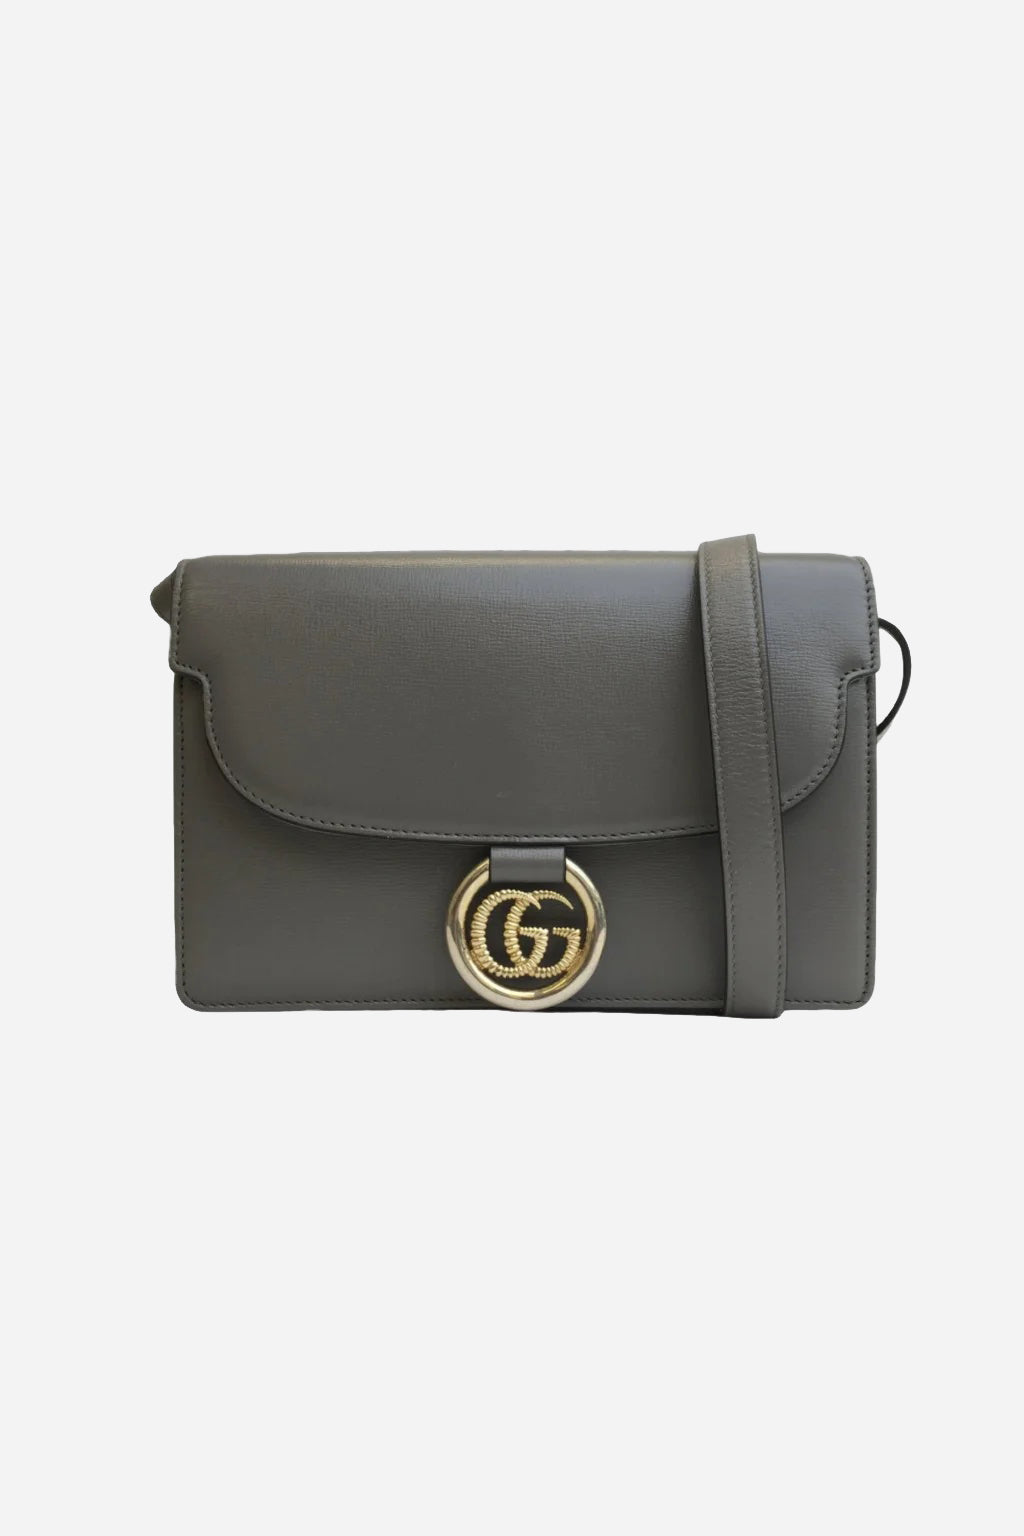 GG Ring Shoulder Bag